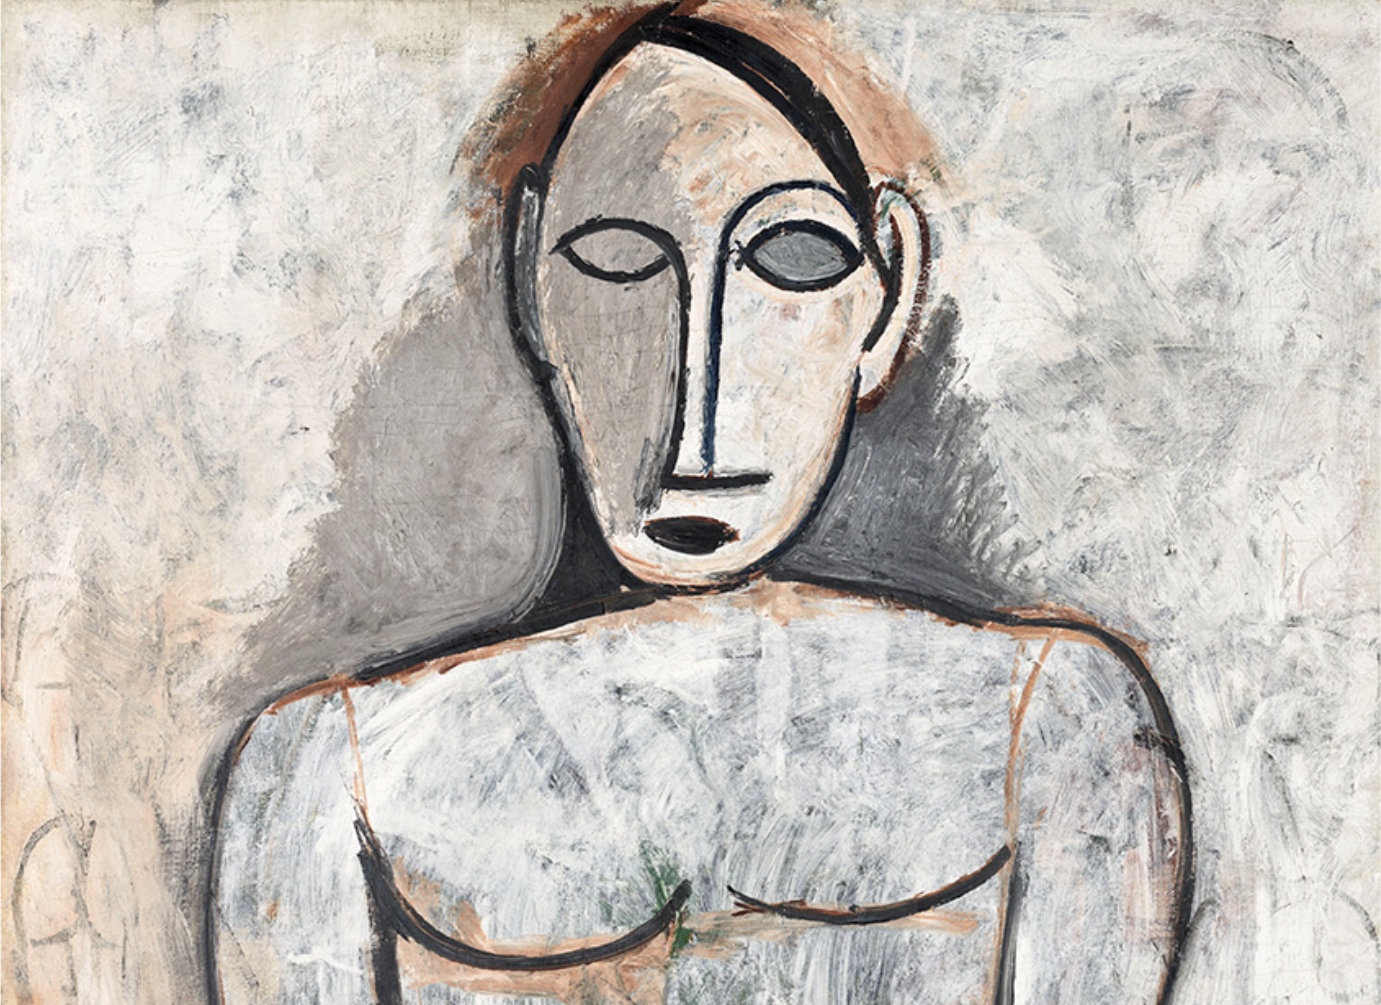 Pablo Picasso, Gertrude Stein e l’invenzione di un linguaggio: la mostra a Parigi